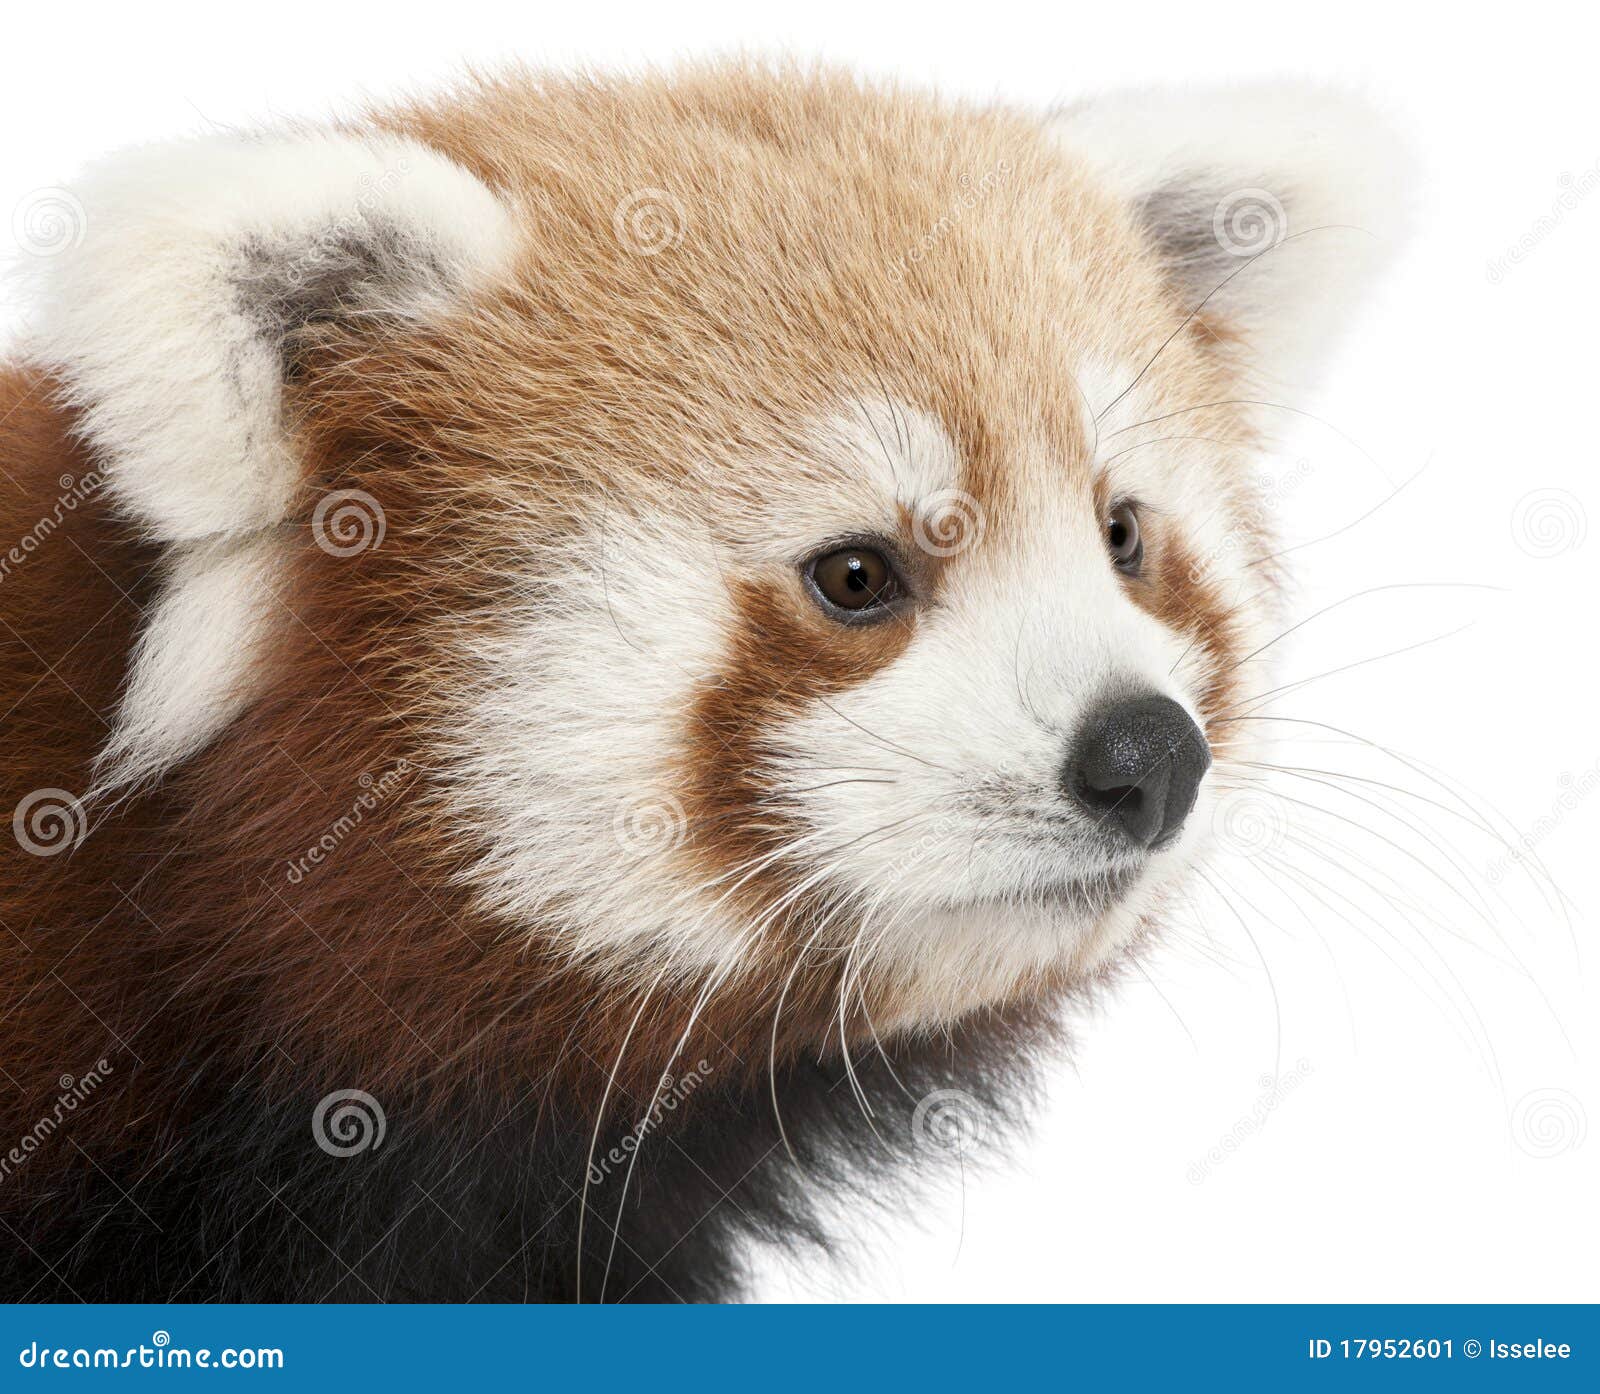 Høj eksponering Grænseværdi Kreta Close-up of Young Red Panda or Shining Cat Stock Image - Image of side,  cute: 17952601